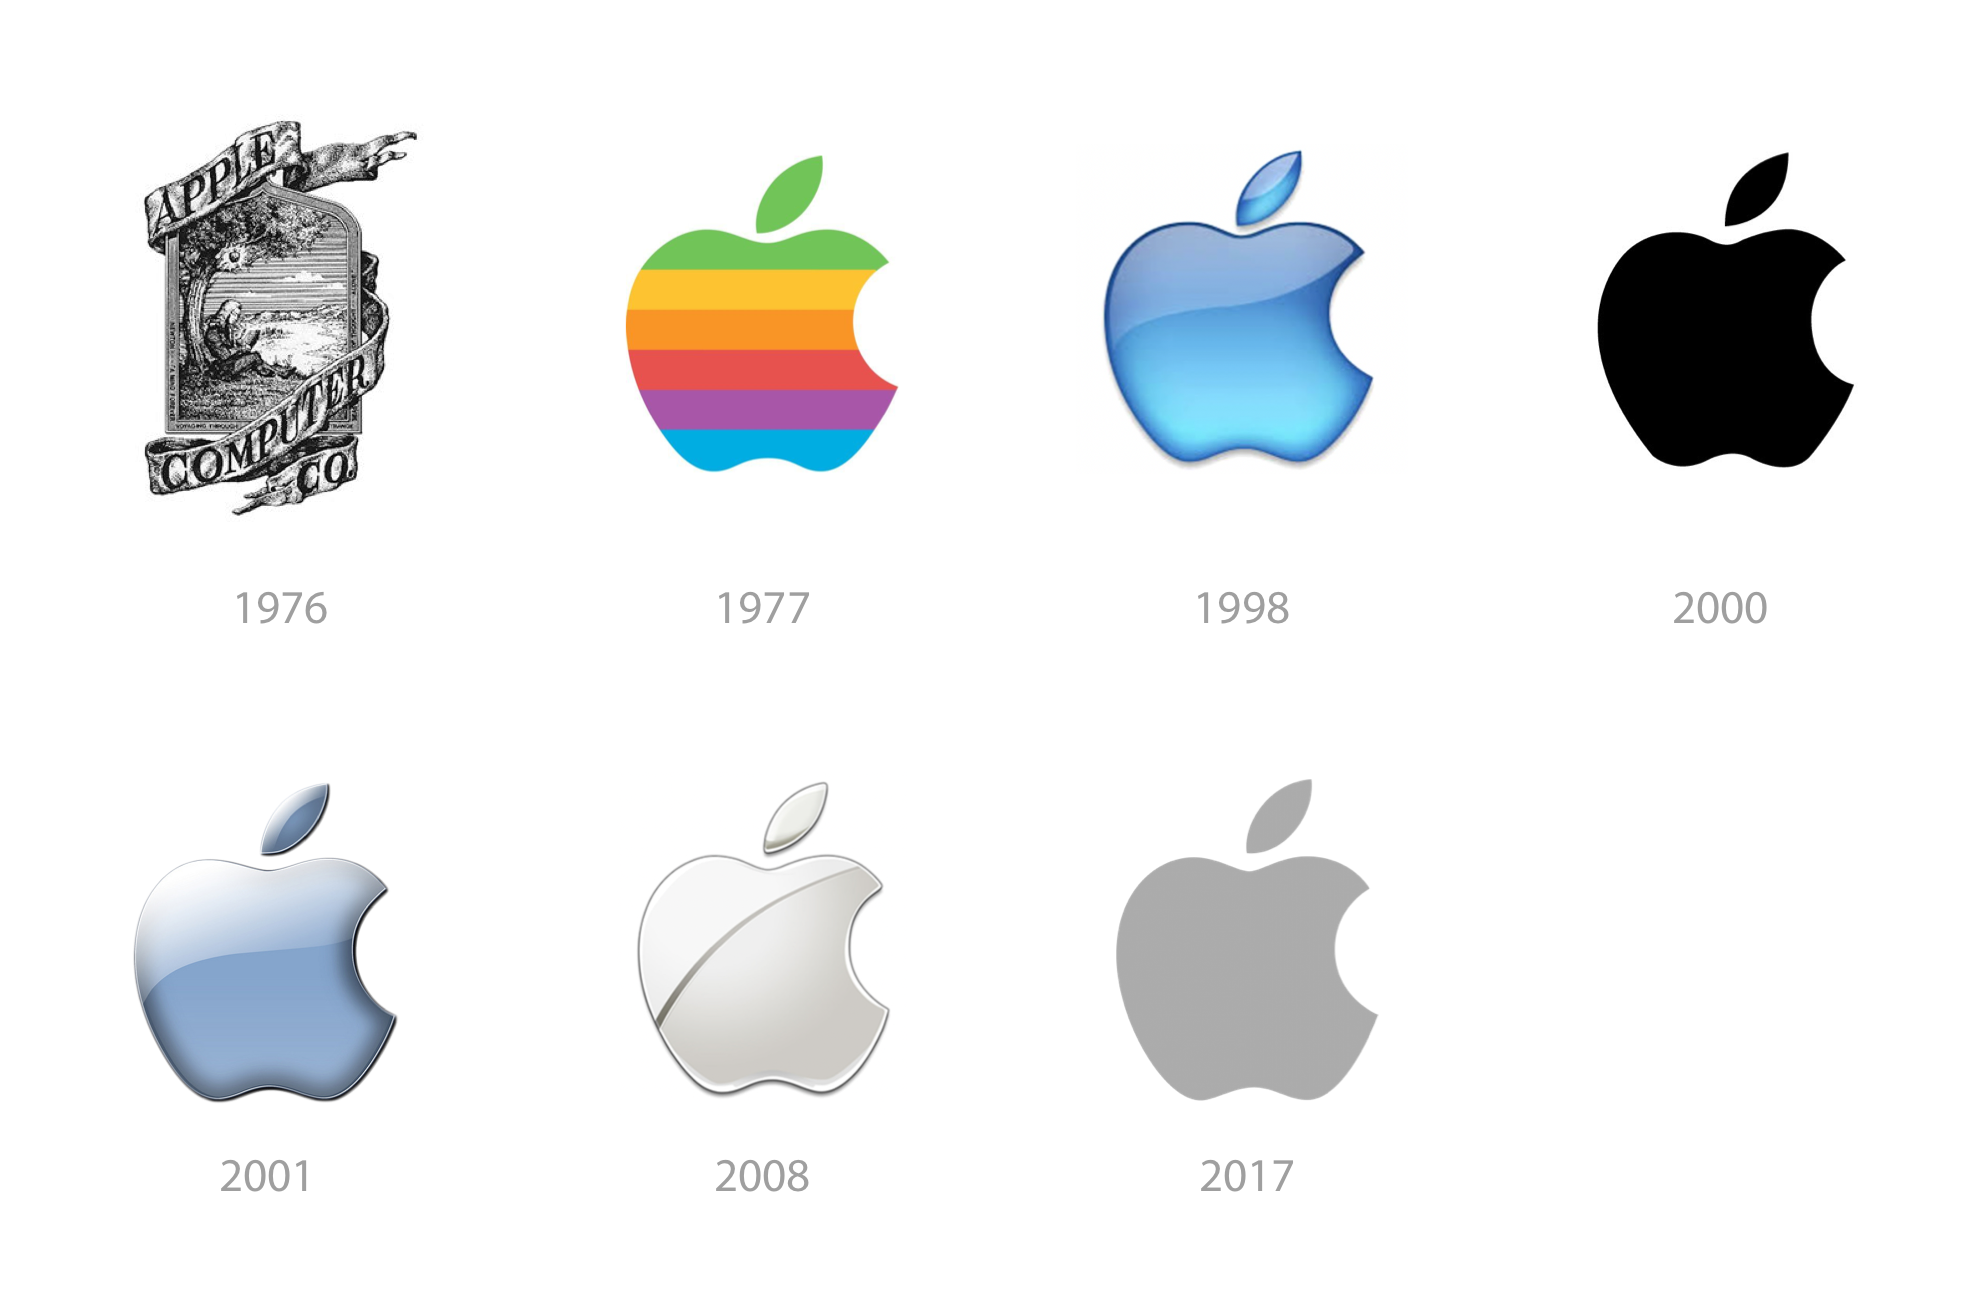 The evolution of Apple's logo